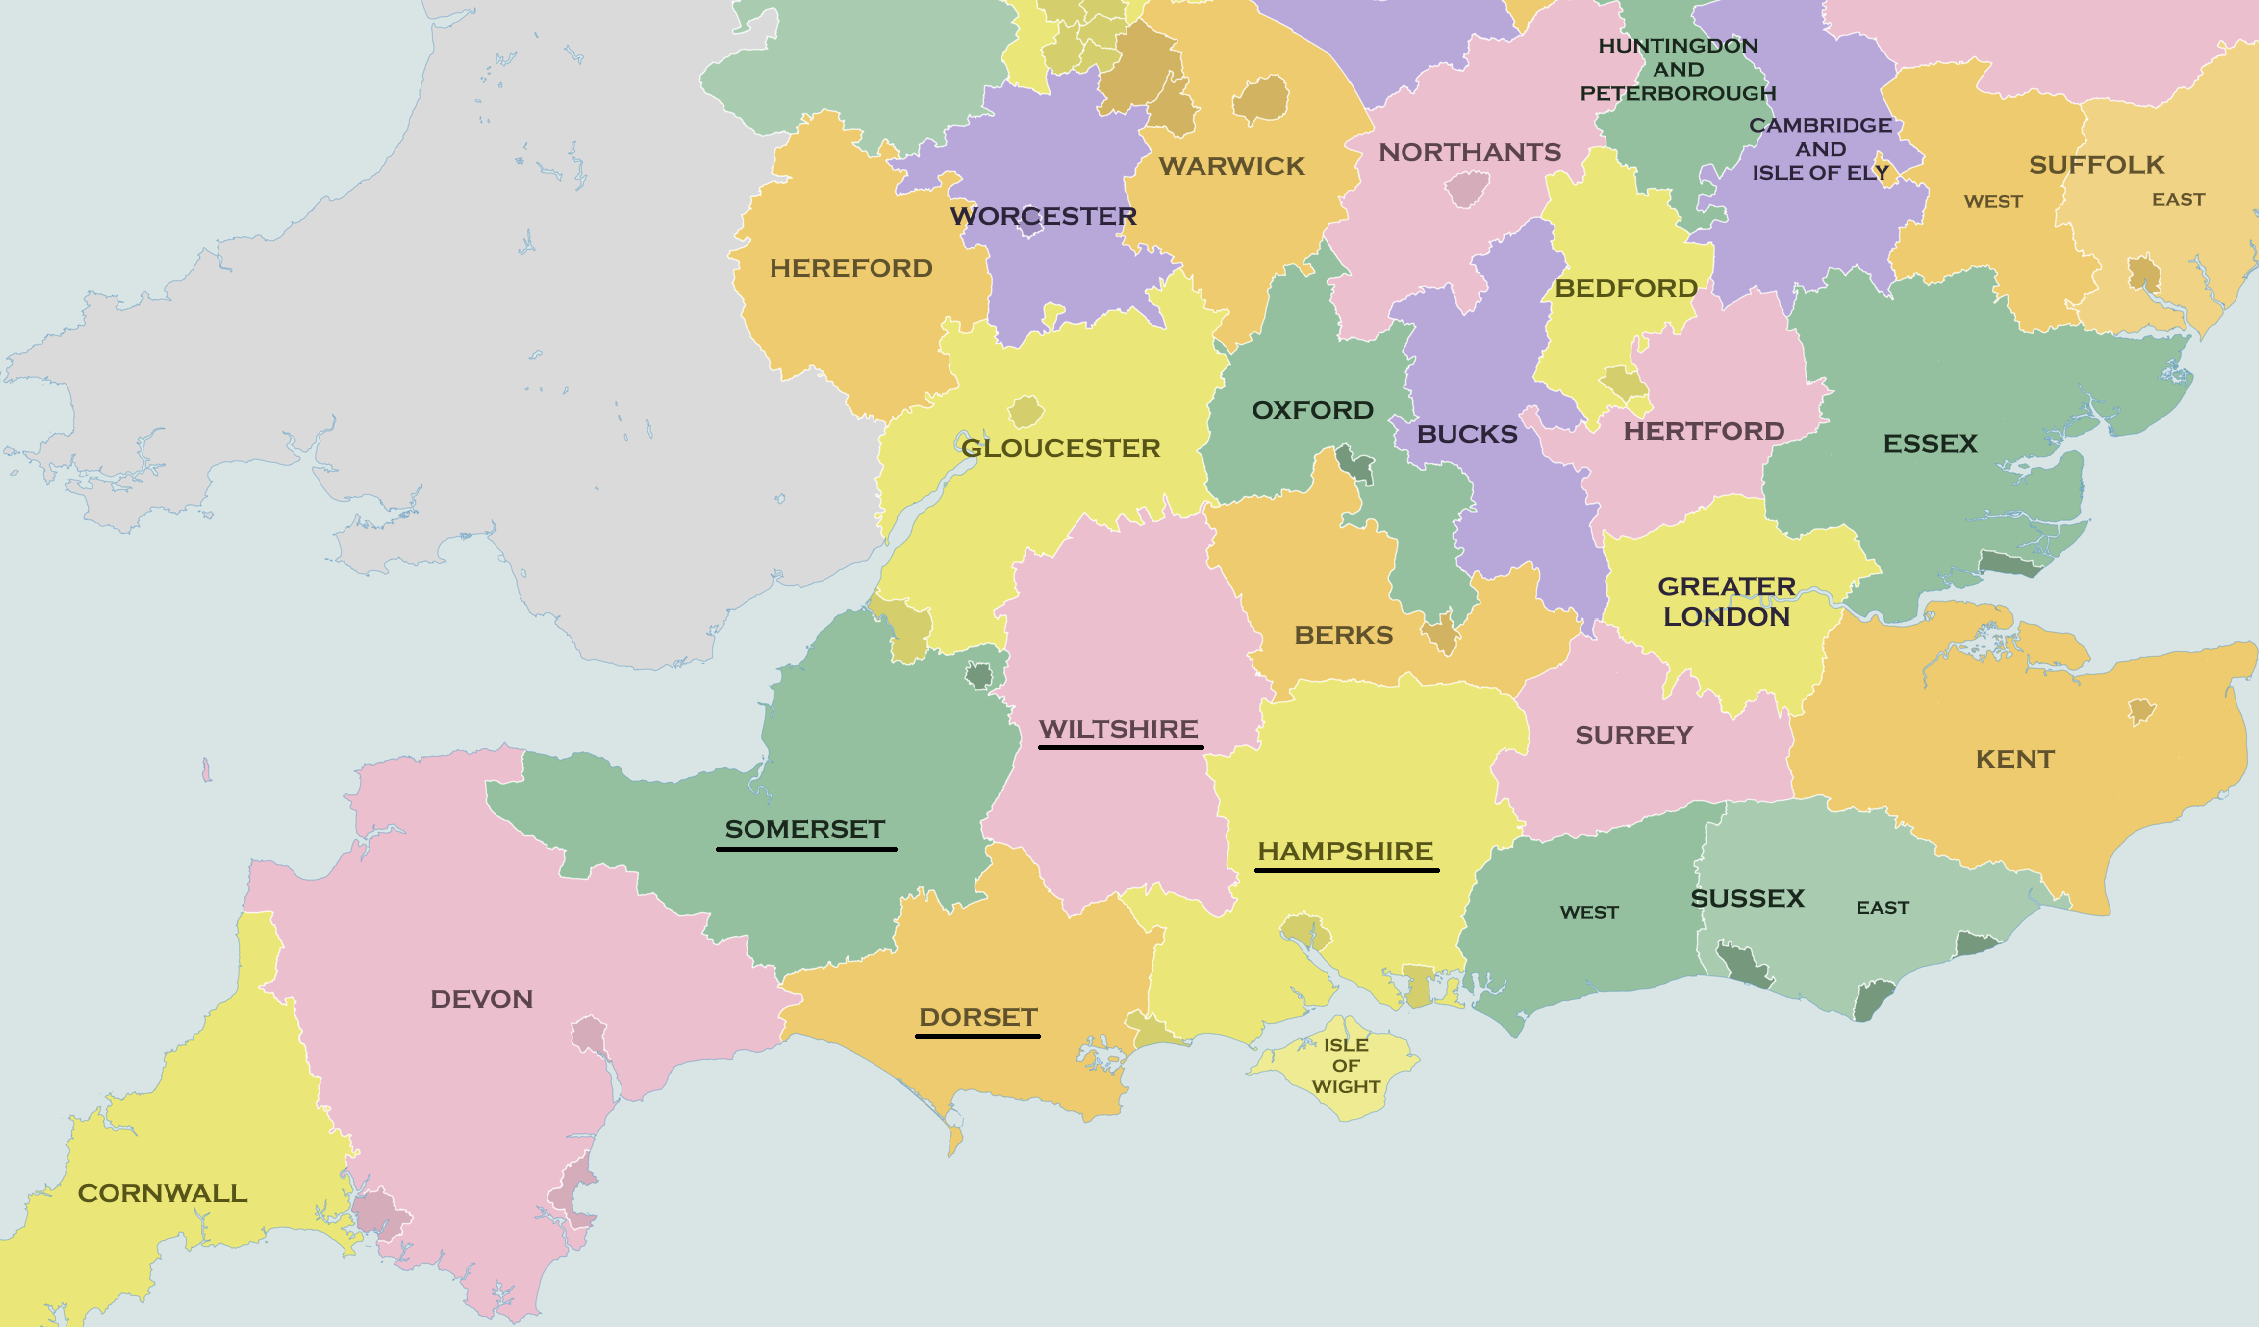 anglia megye térkép Thomas Hardy regényeinek színhelye, Wessex   Pangea anglia megye térkép